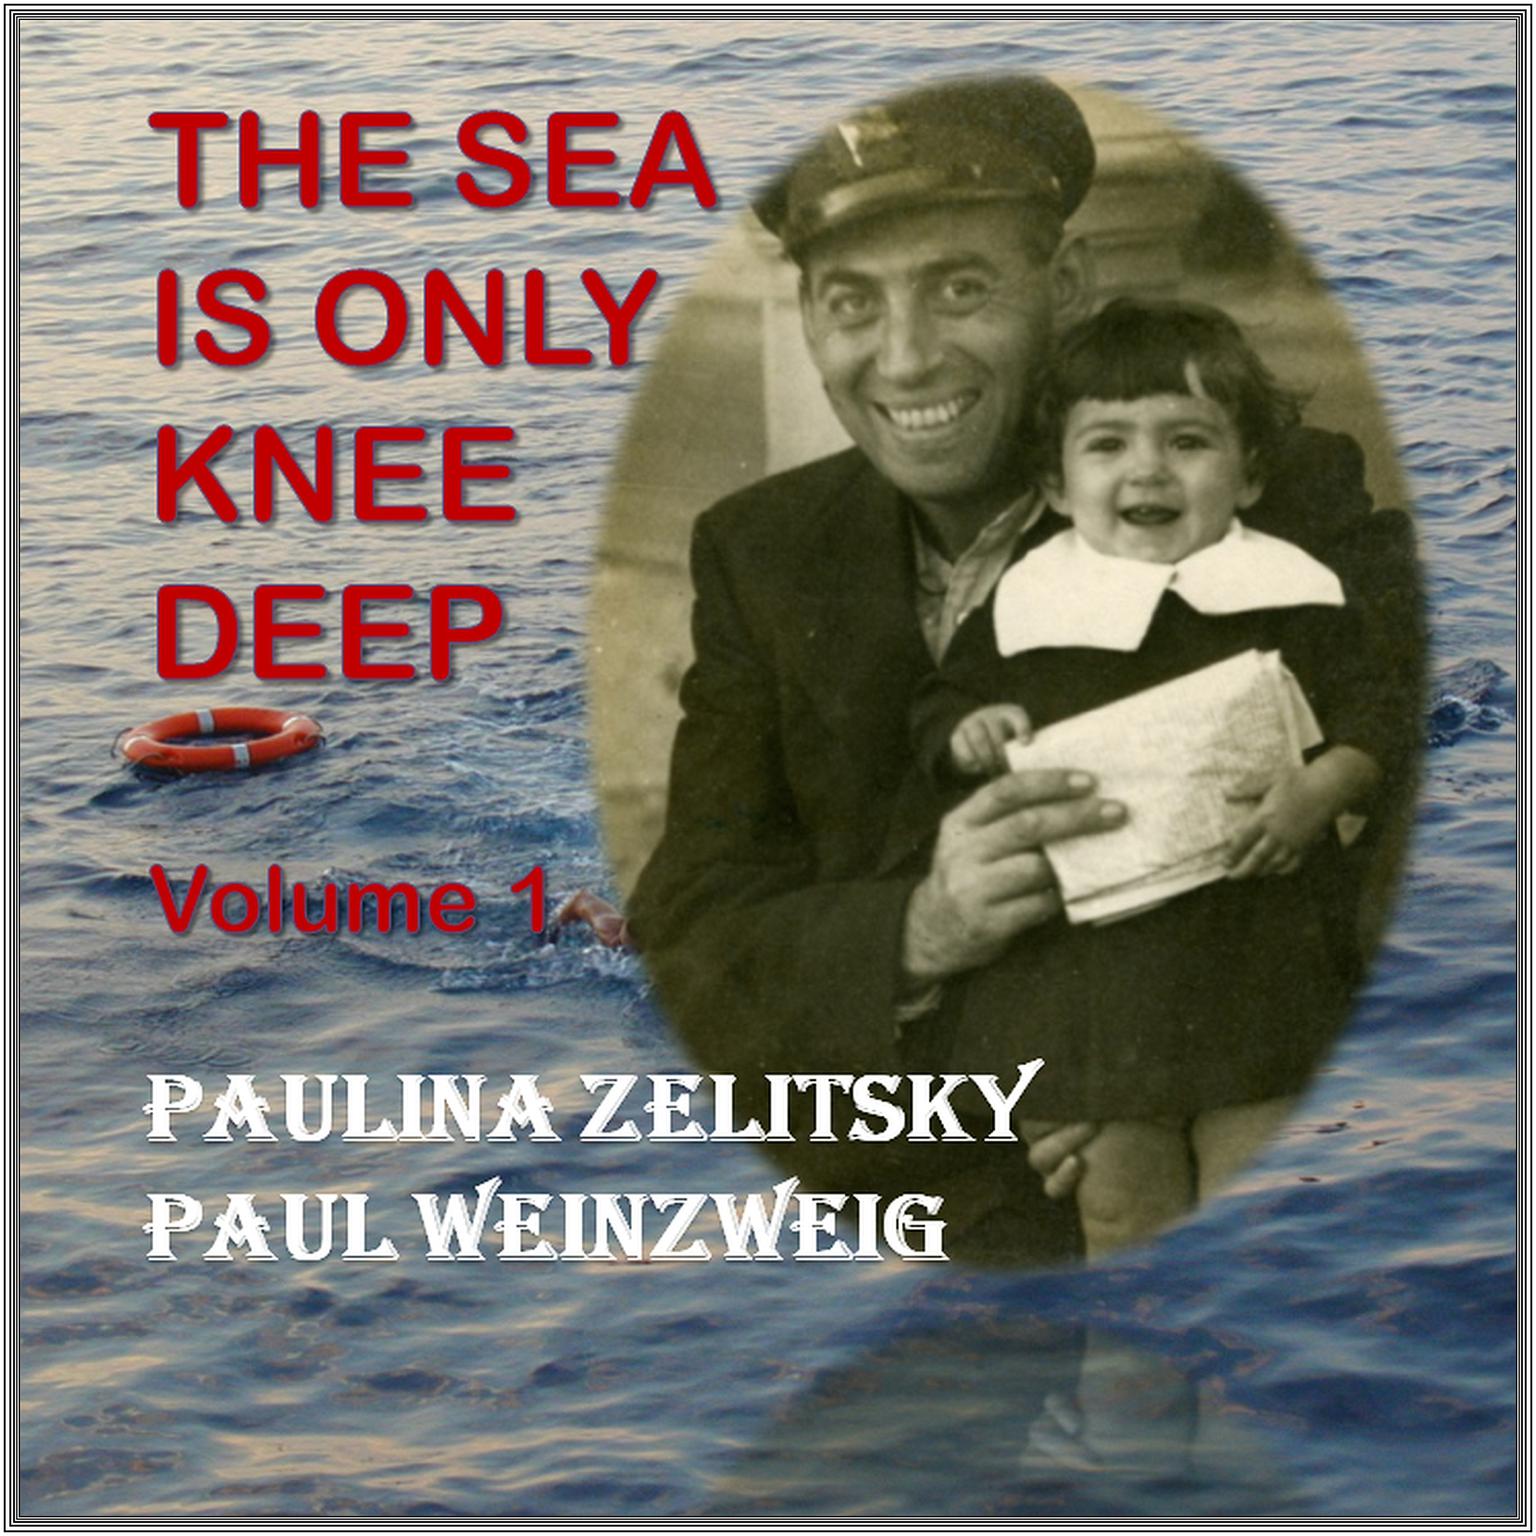 The Sea is only Knee Deep - Volume 1 Audiobook, by Paul Weinzweig